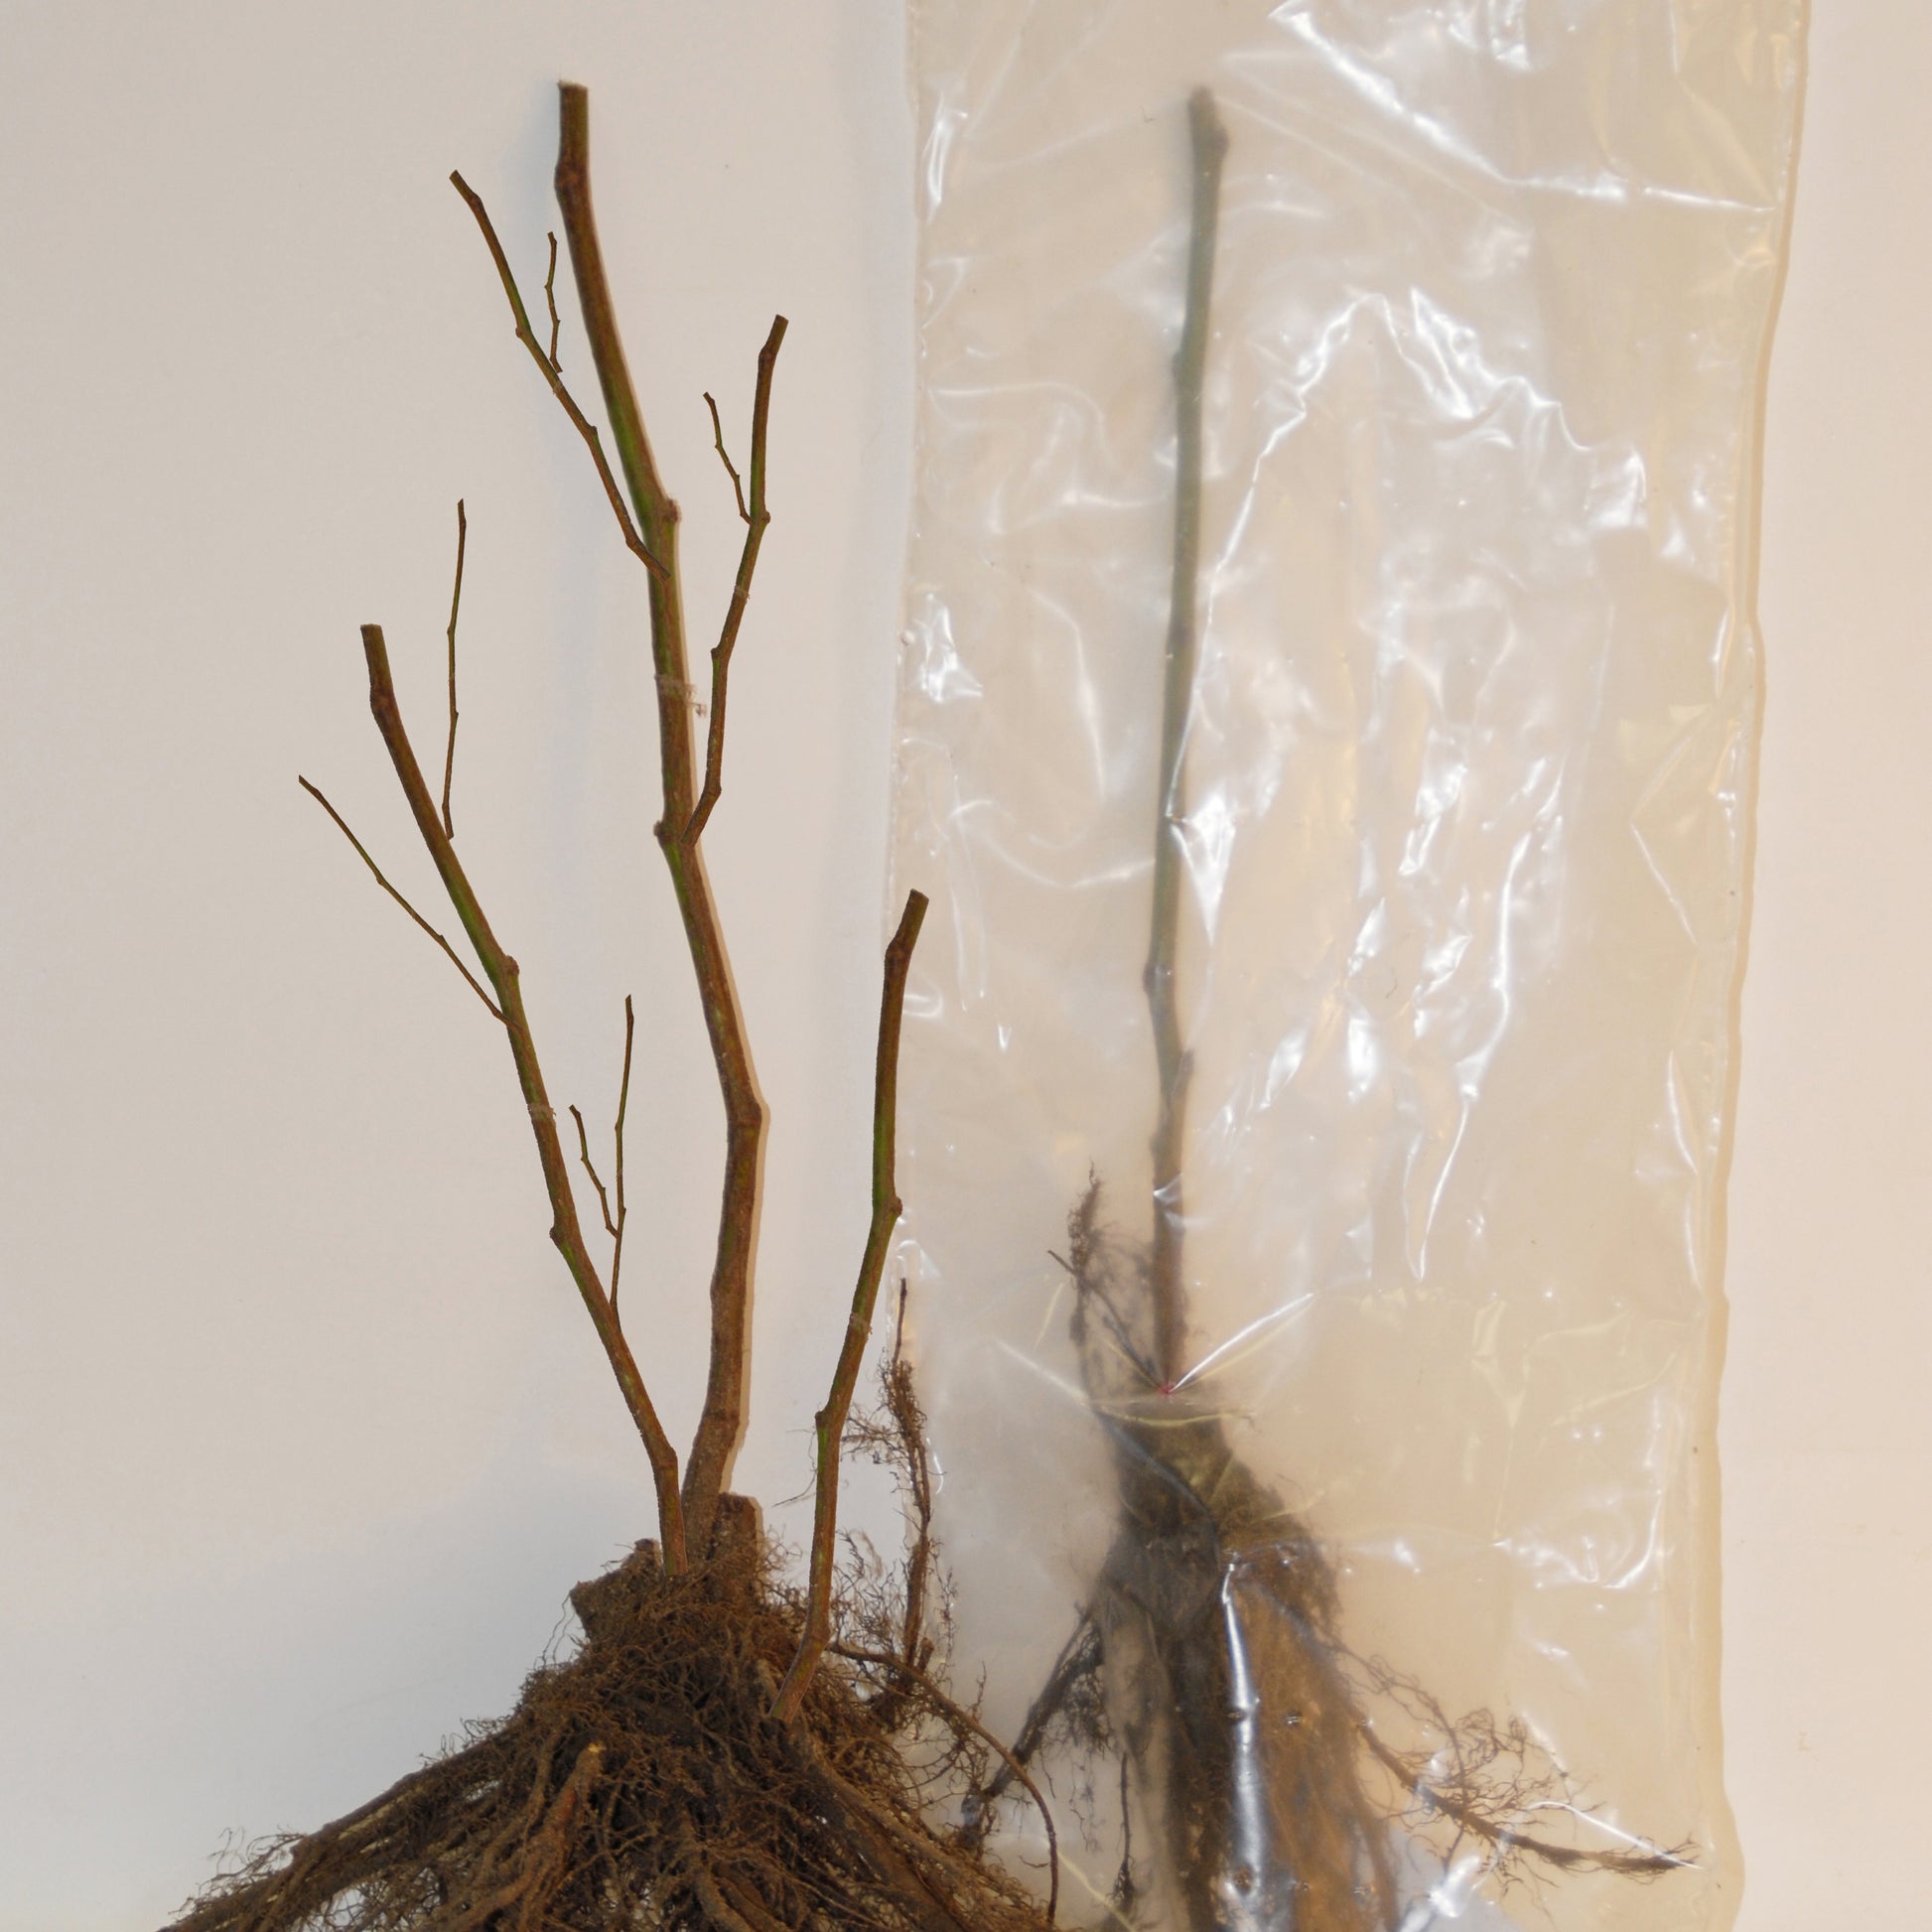 Witte aalbes 'Blanka' (x2) - Ribes rubrum blanka - Bessen